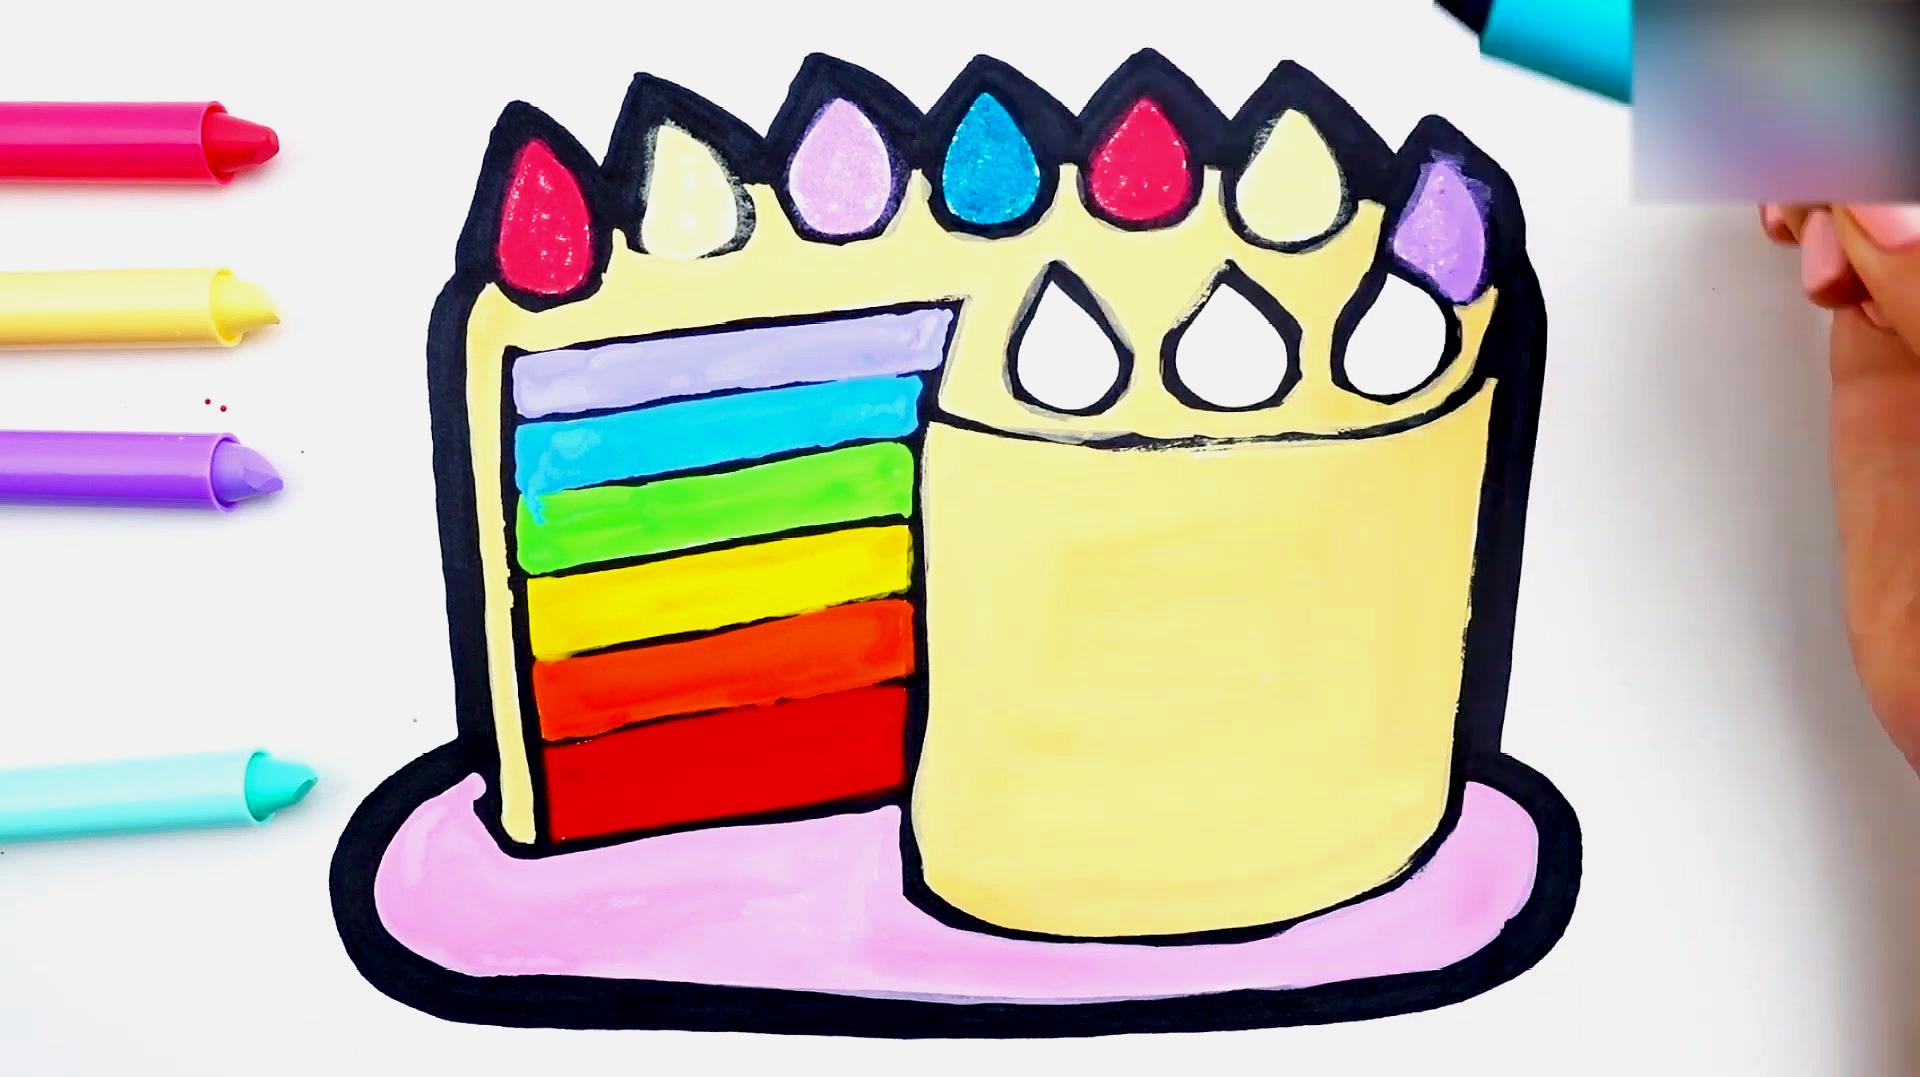 简易画教你怎么画彩虹蛋糕,涂完颜色真好看!